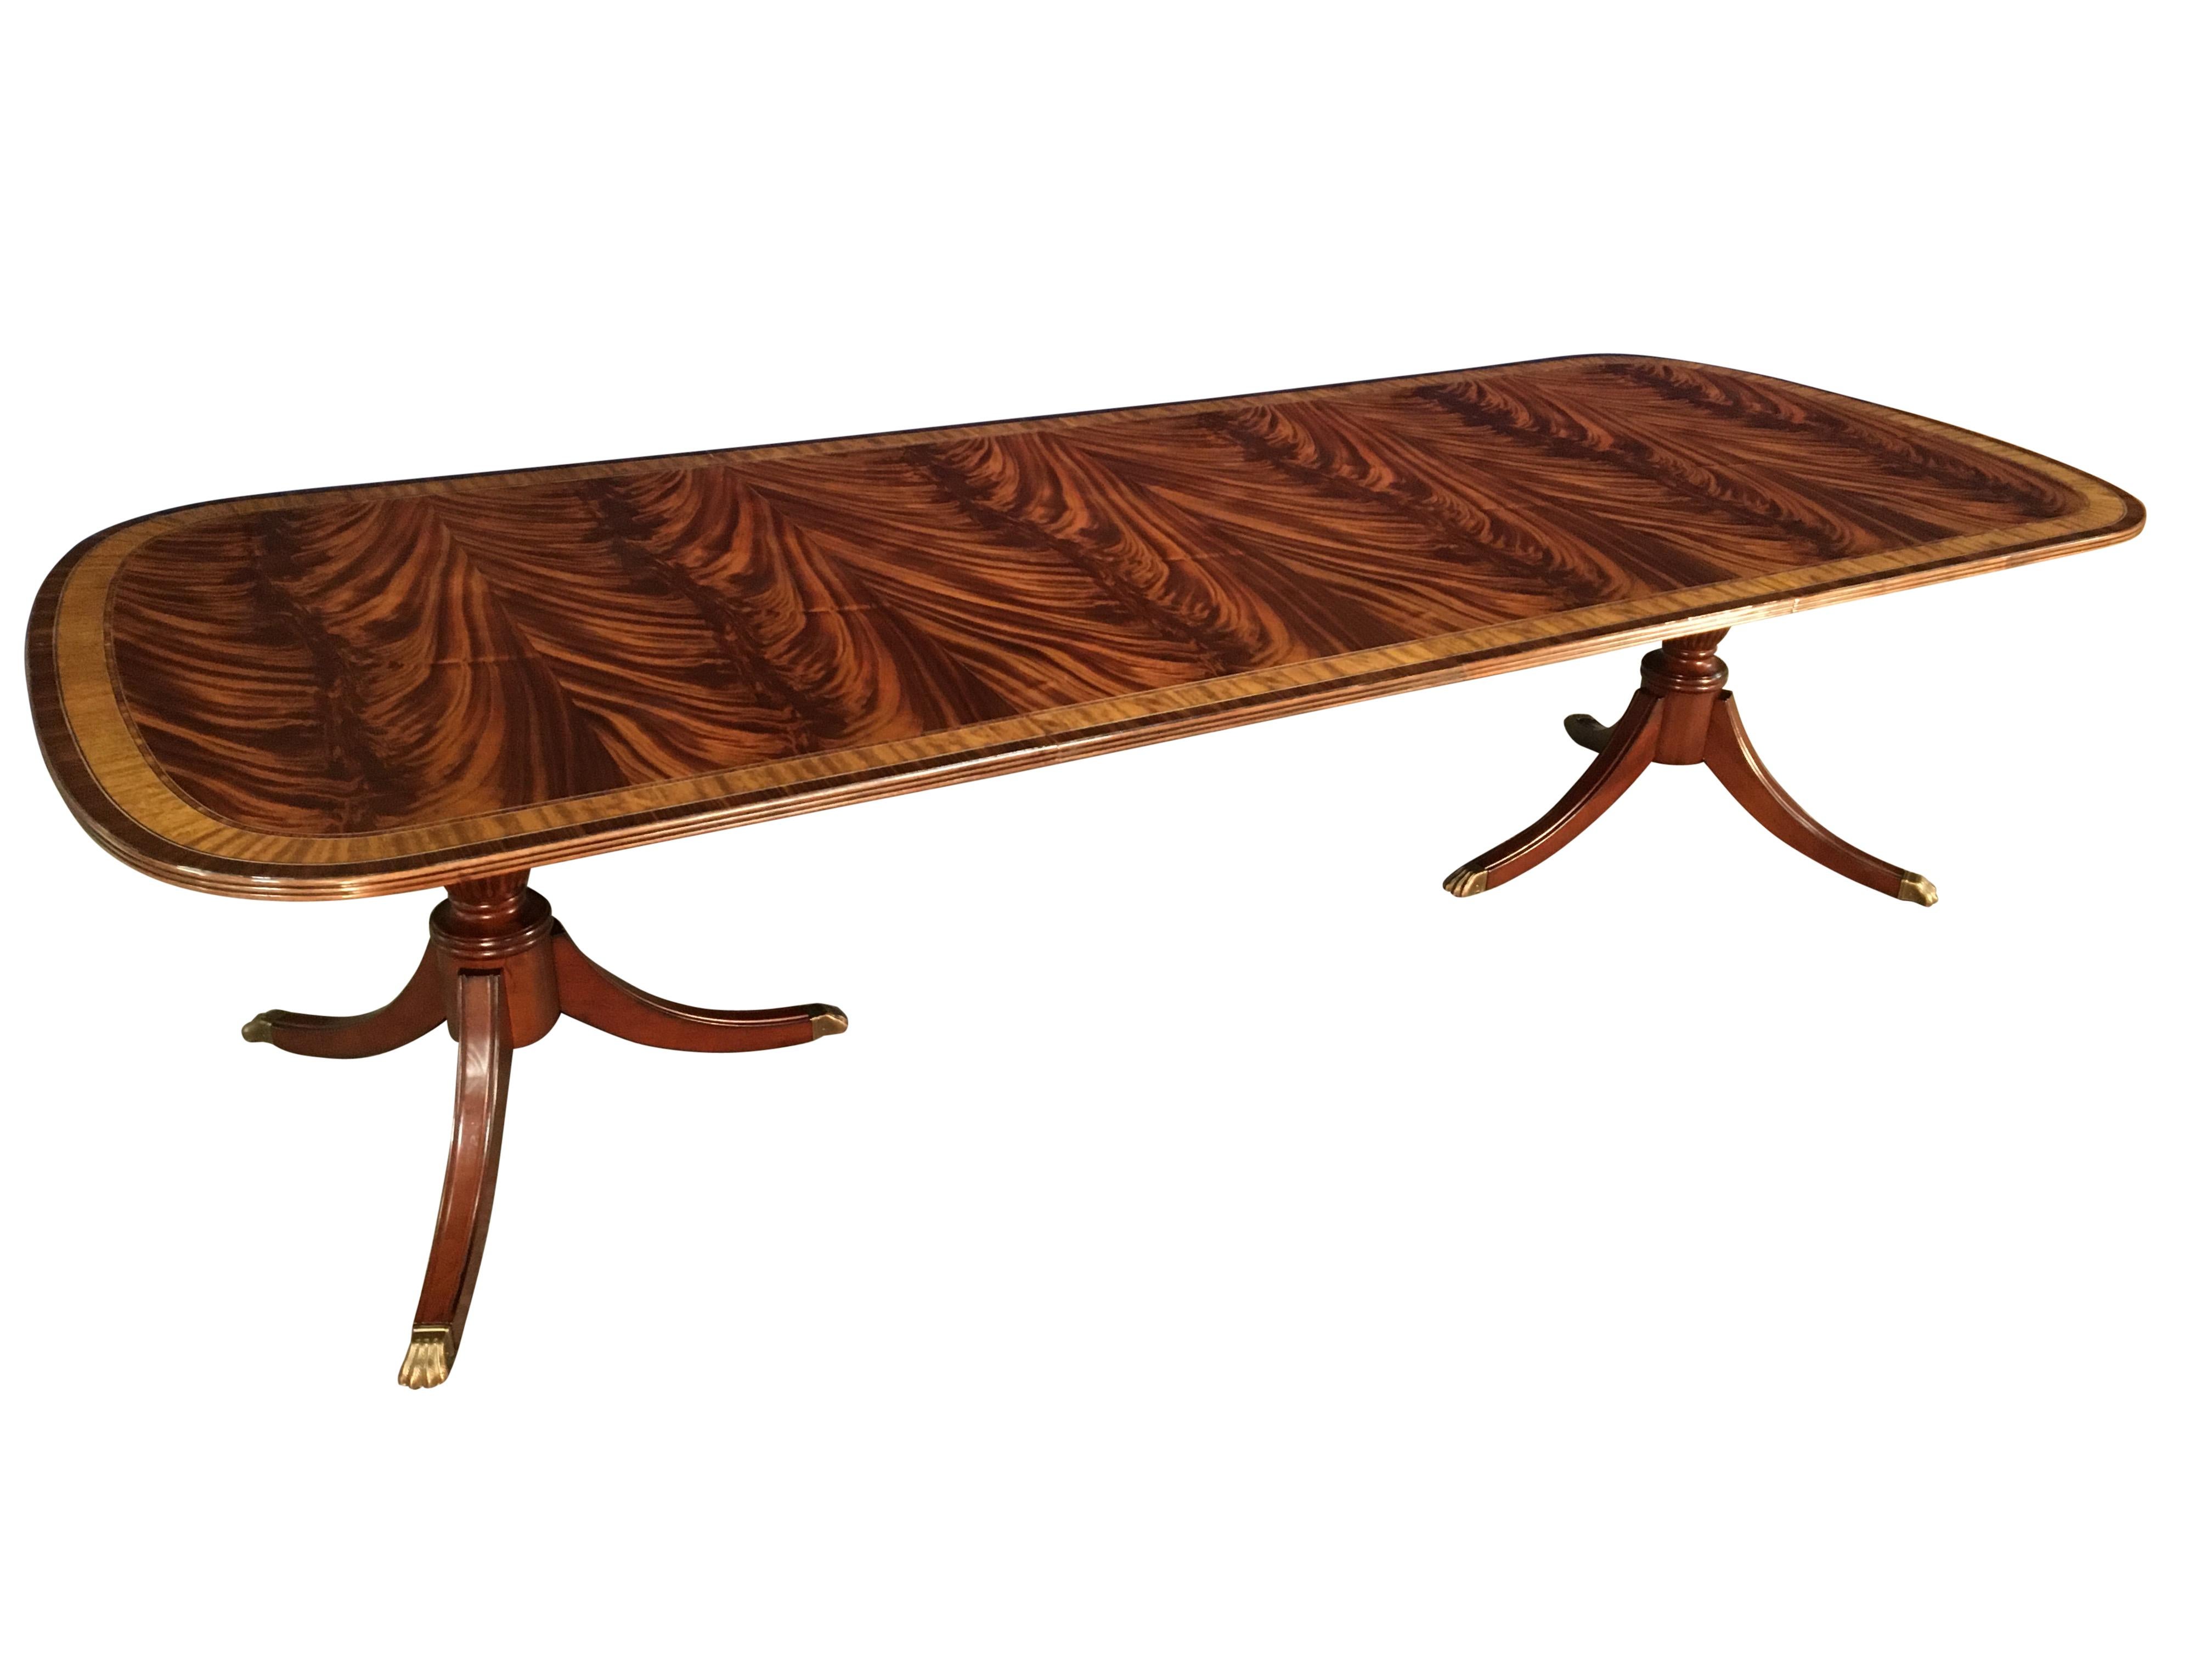 Il s'agit d'une grande table de salle à manger traditionnelle en acajou fabriquée sur commande dans l'atelier de Leighton Hall. Il se compose d'un champ d'acajou crotch swirched assorti provenant d'Afrique de l'Ouest et de bordures en bois de satin